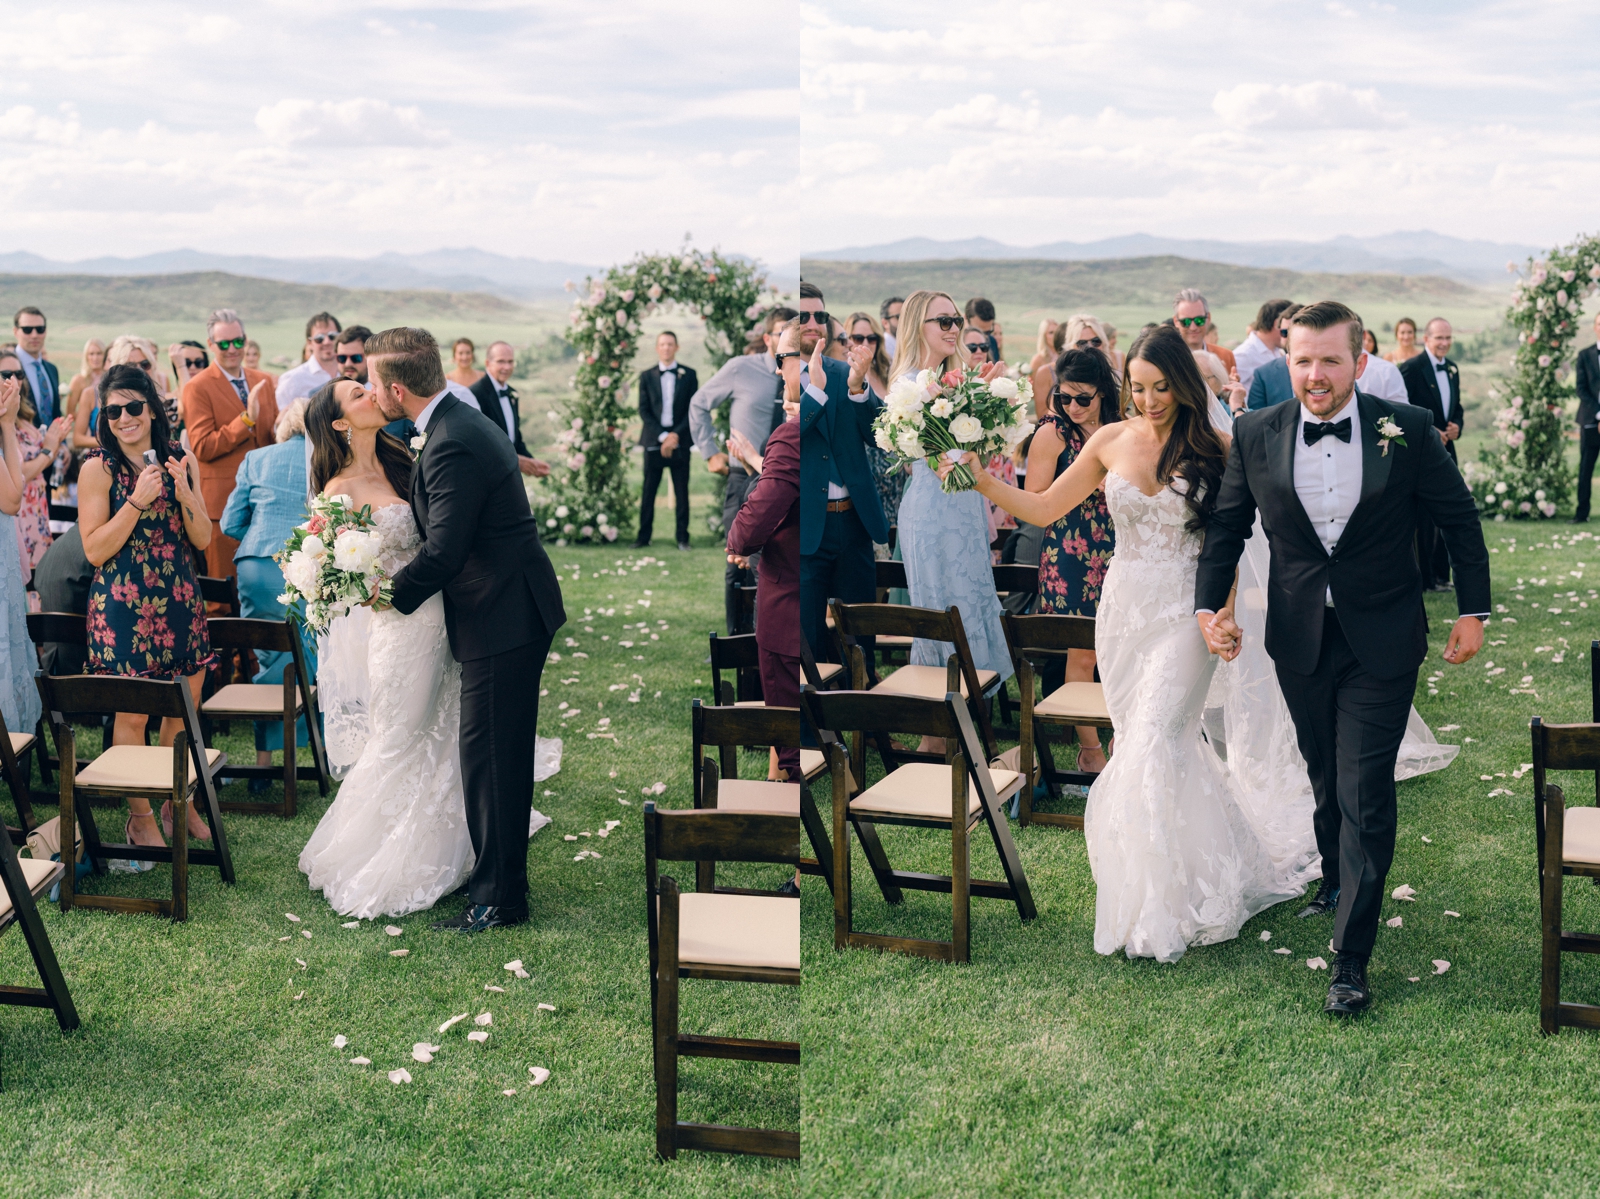 Colorado weddings; wedding tent rentals